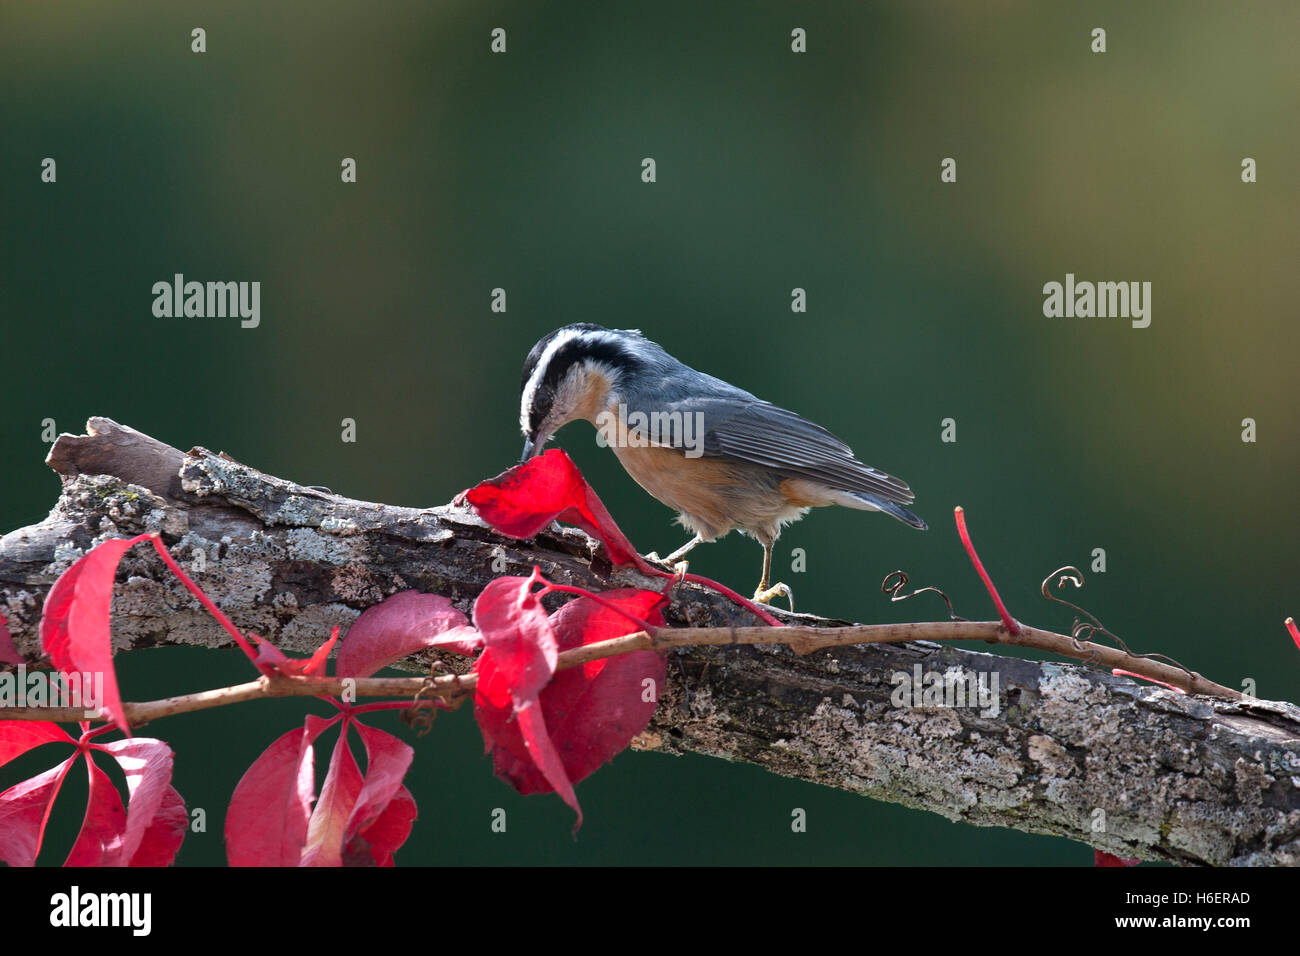 Petto rosso picchio muratore cerca cibo sul ramo rosso con foglie di autunno Foto Stock